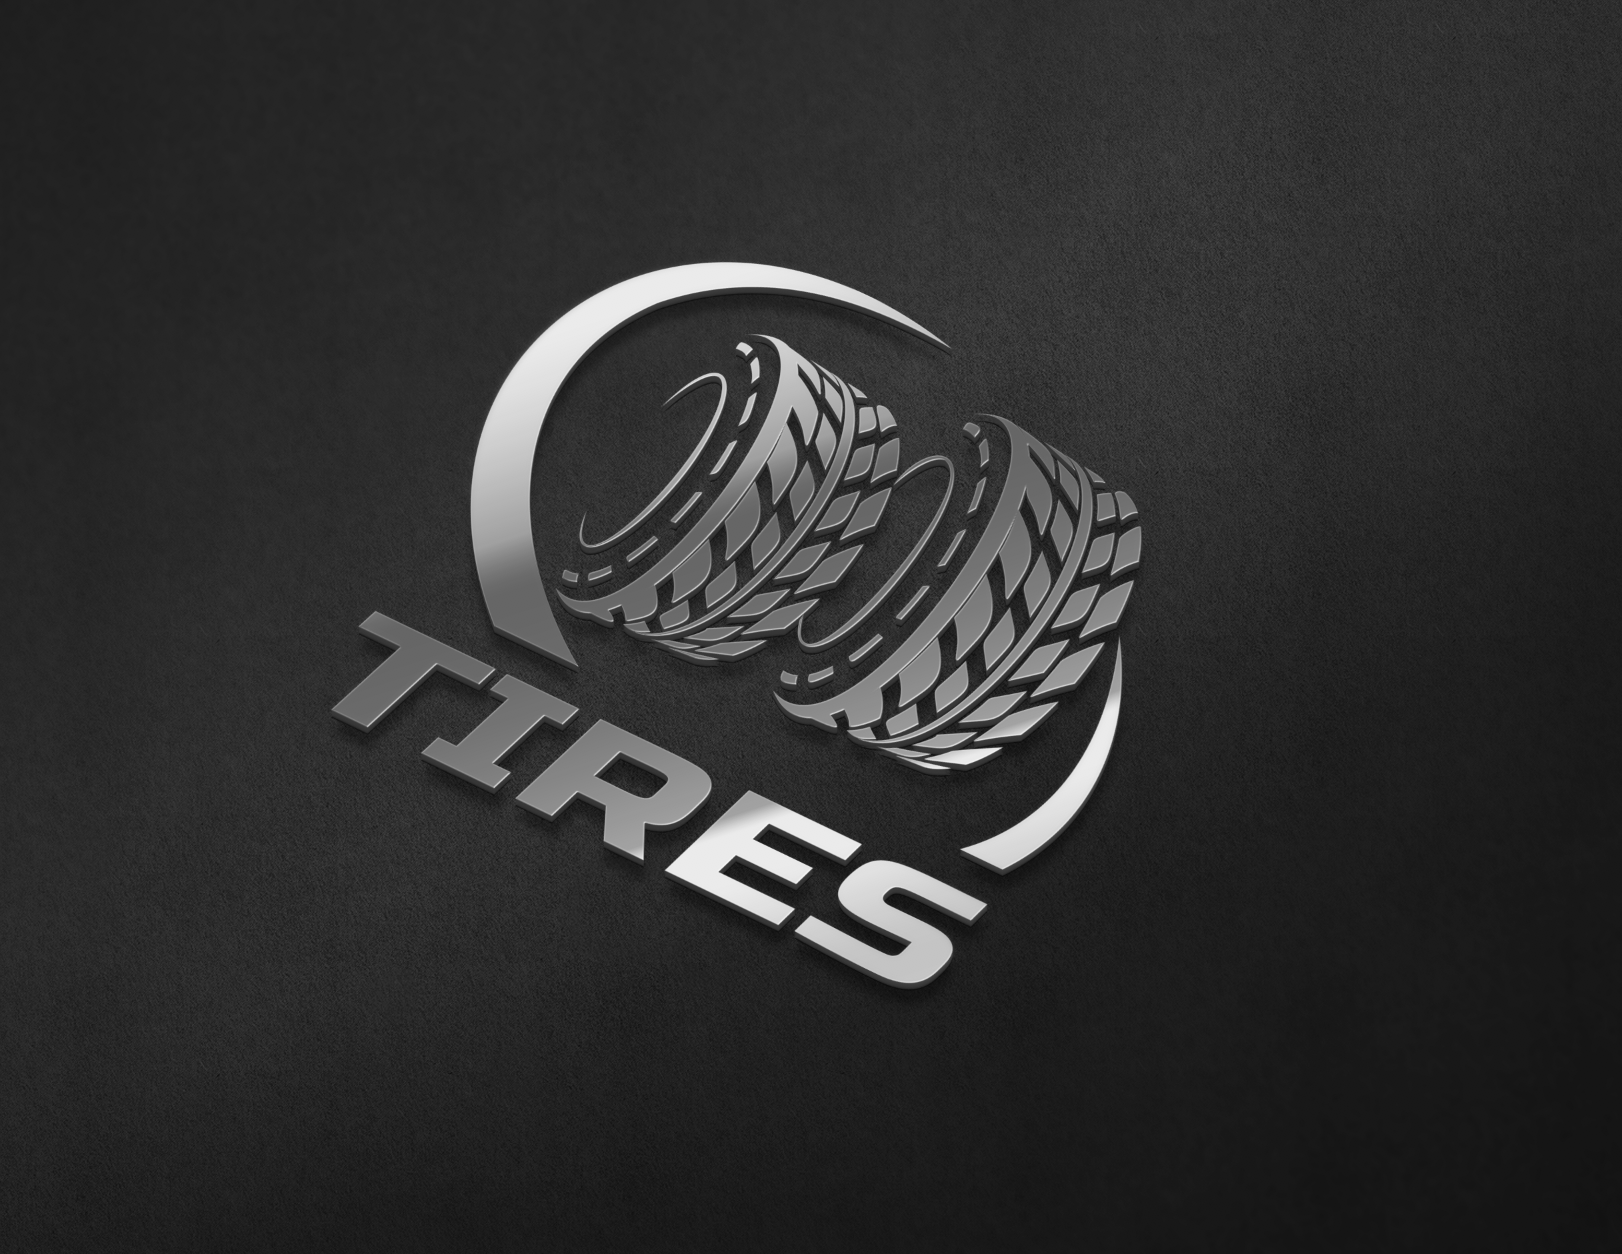 tire shop logo ideas 1